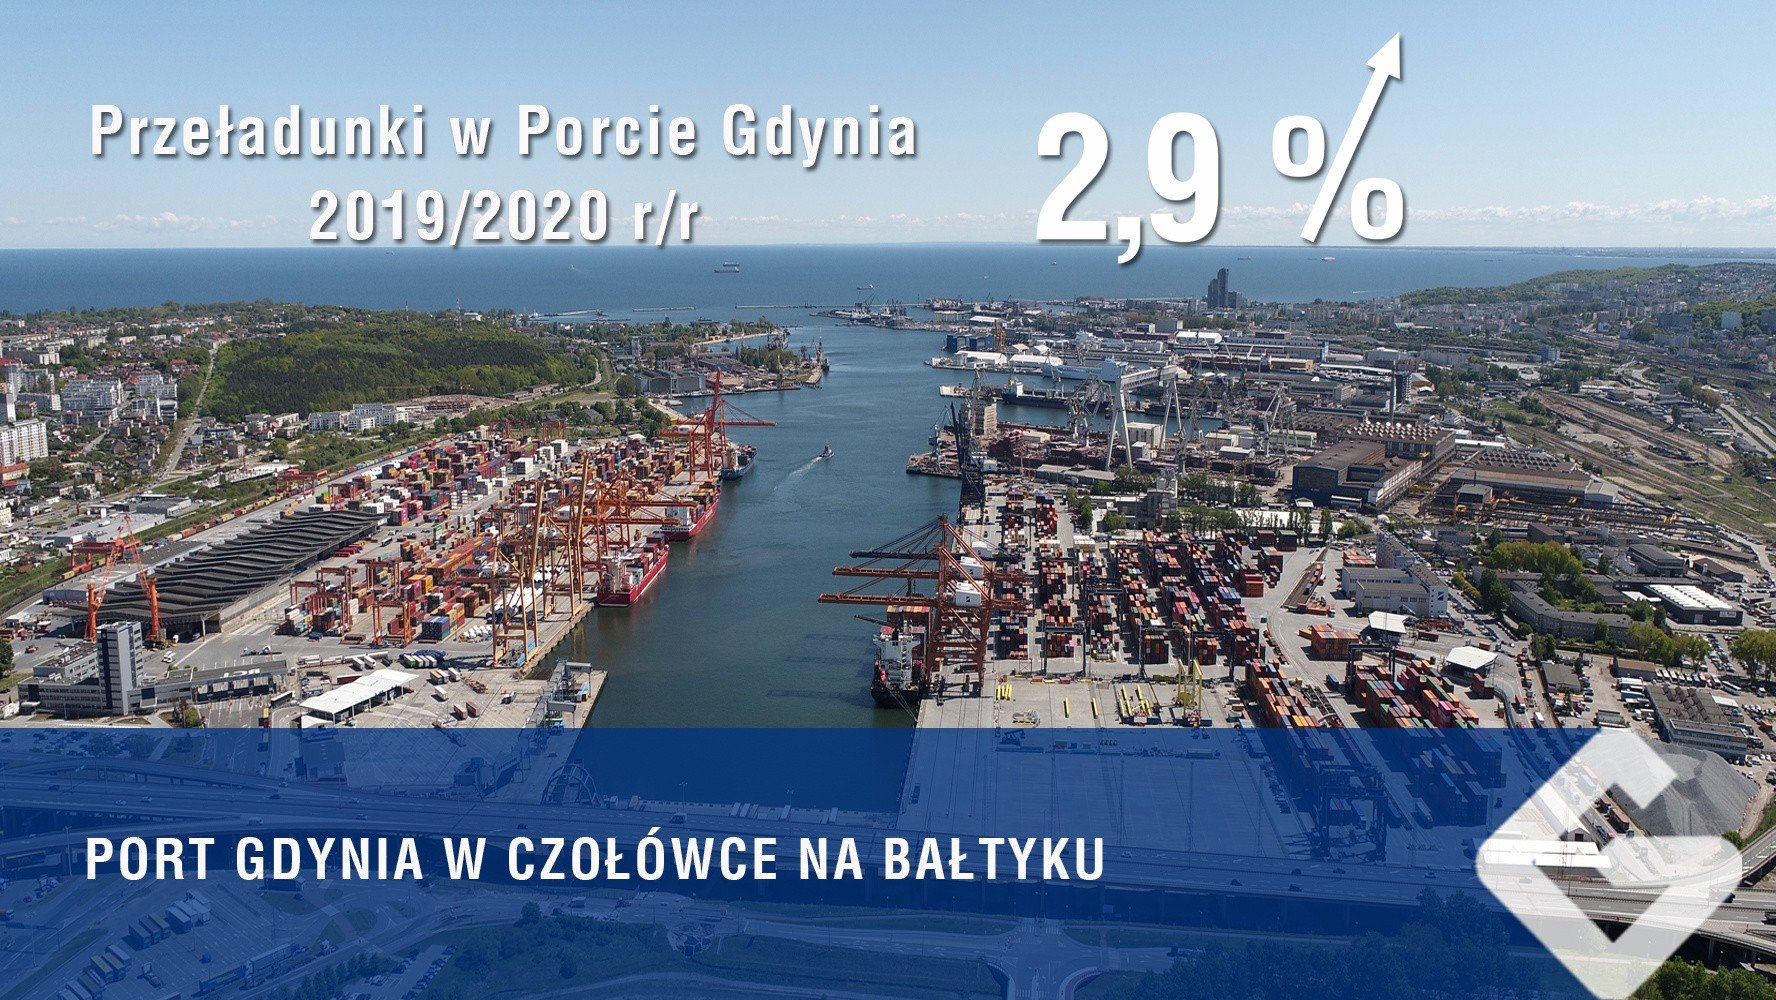 Port Gdynia Generatorem Rozwoju Gospodarczego Regionu I Kraju Dziennik Baltycki